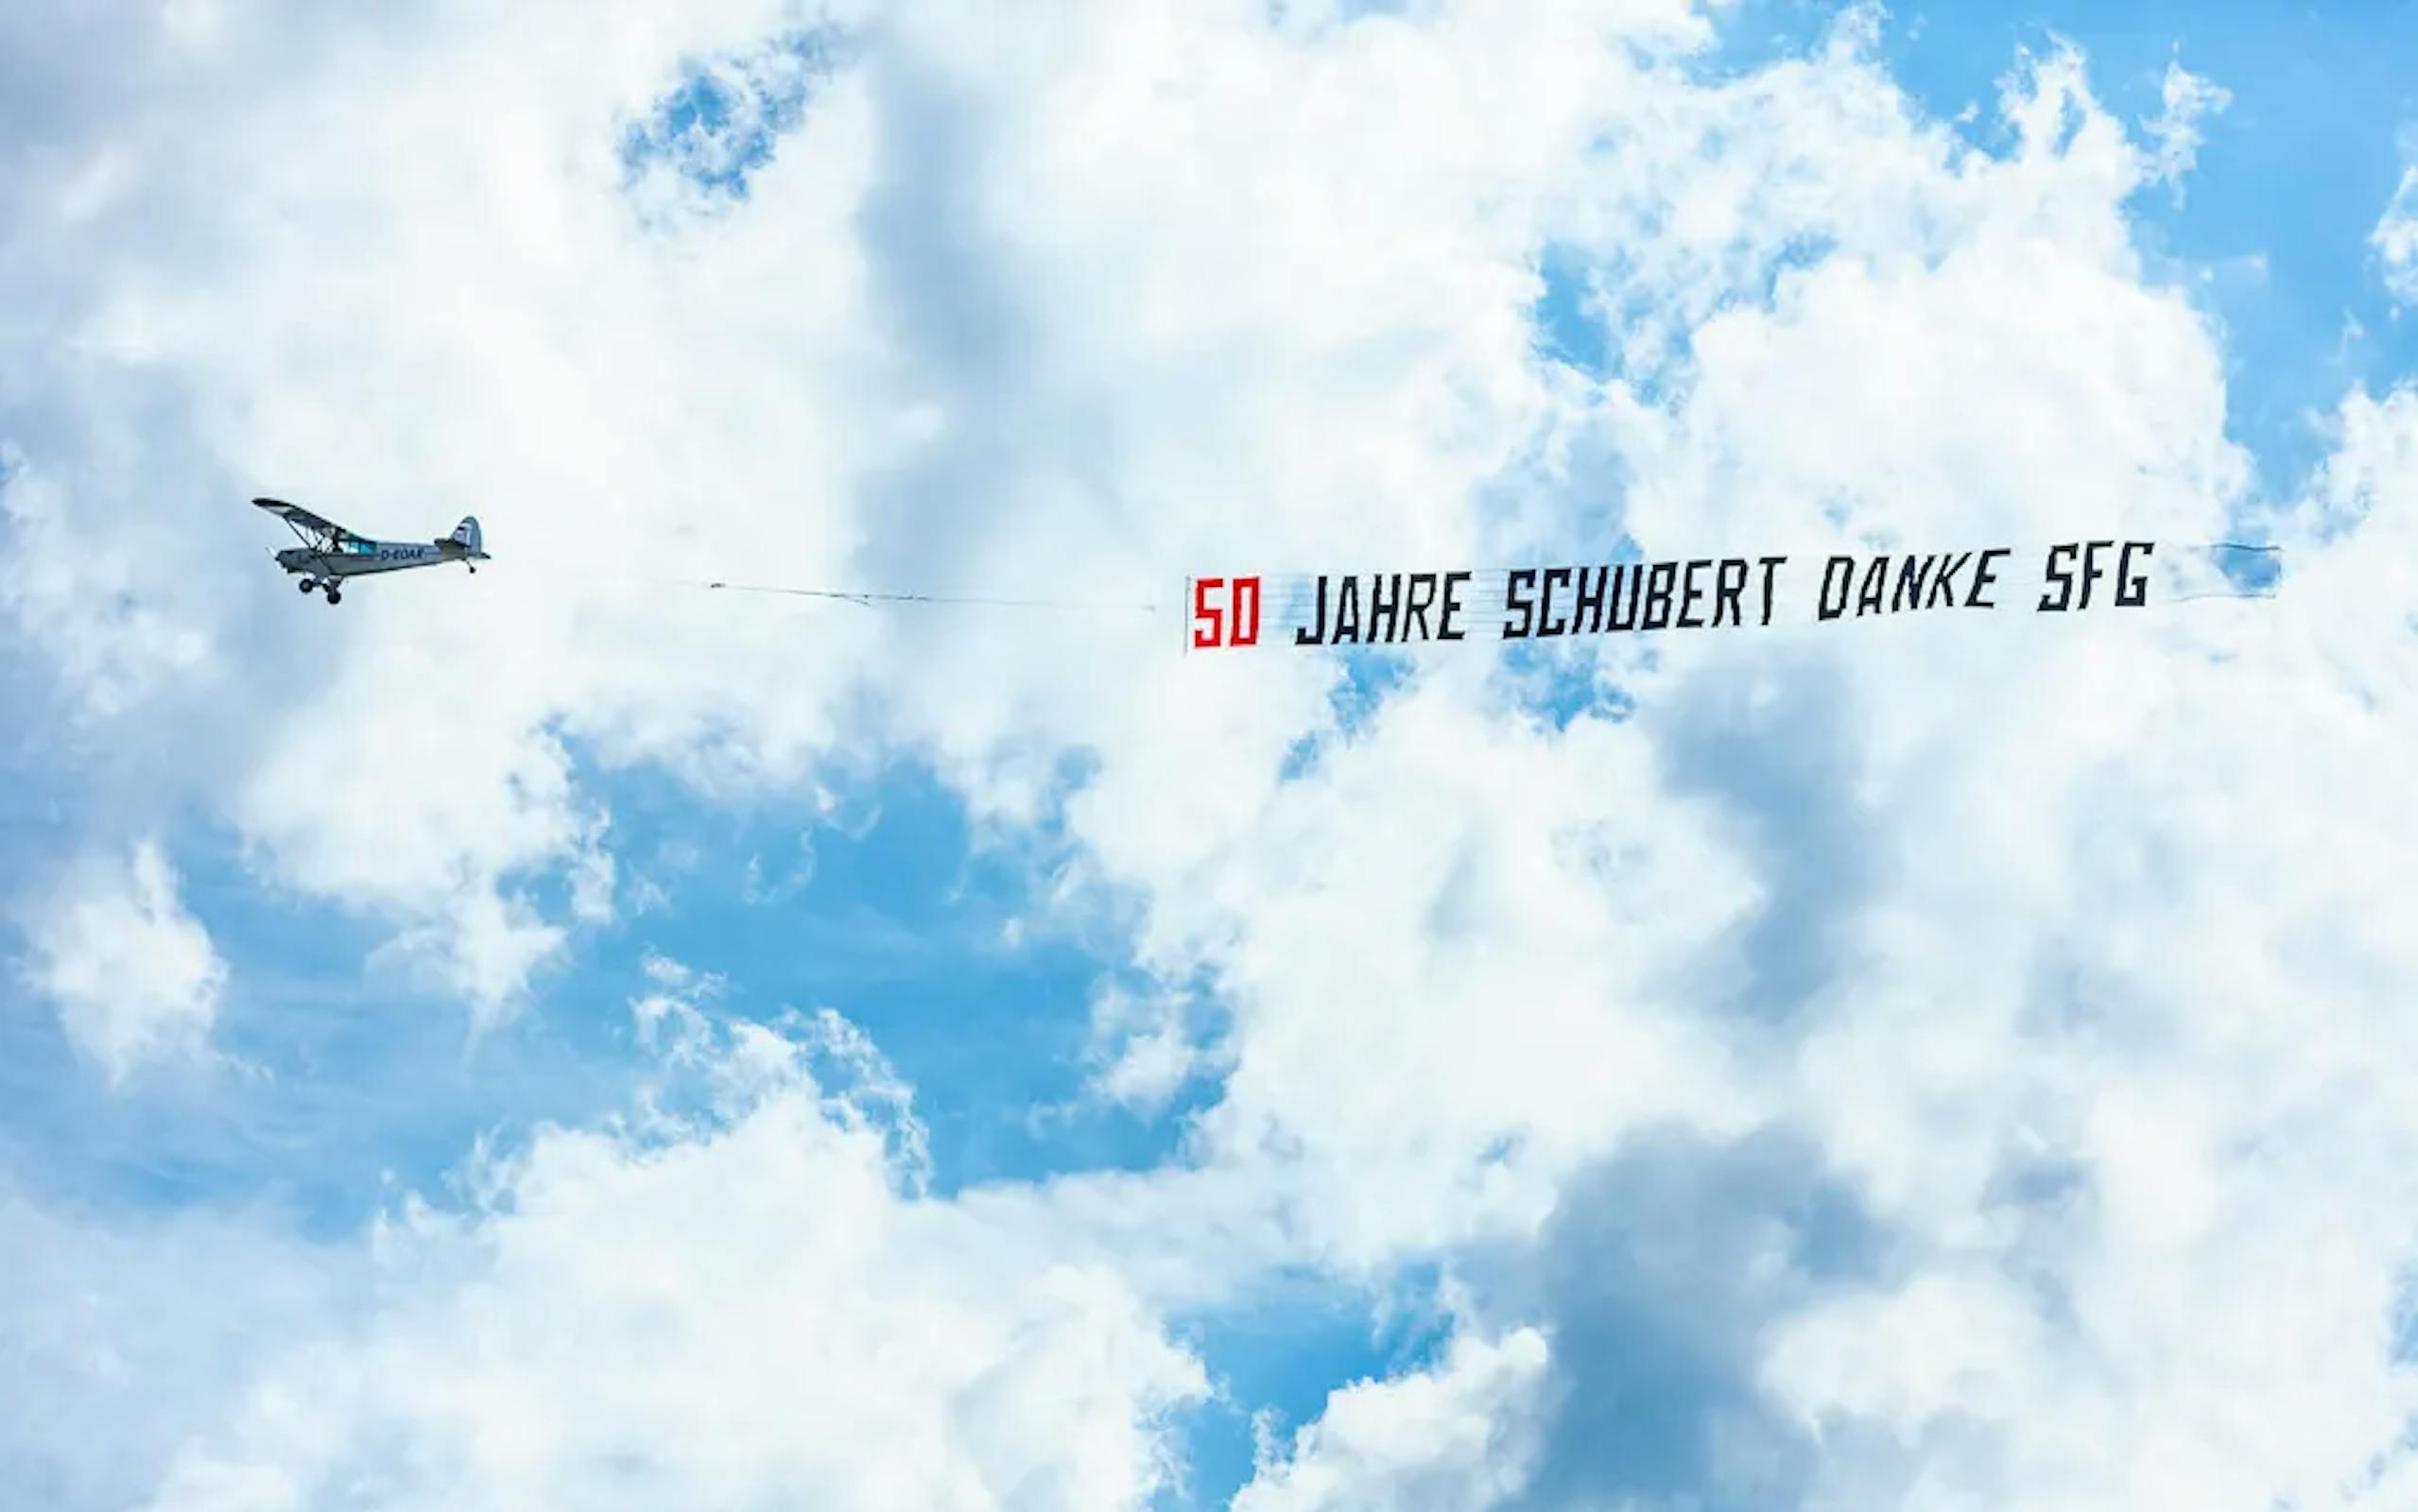 Ein Flugzeug ist vor Wolken zu sehen, es zieht einen Banner mit der Aufschrift "50 Jahre Schubert Danke SFG" hinter sich her.